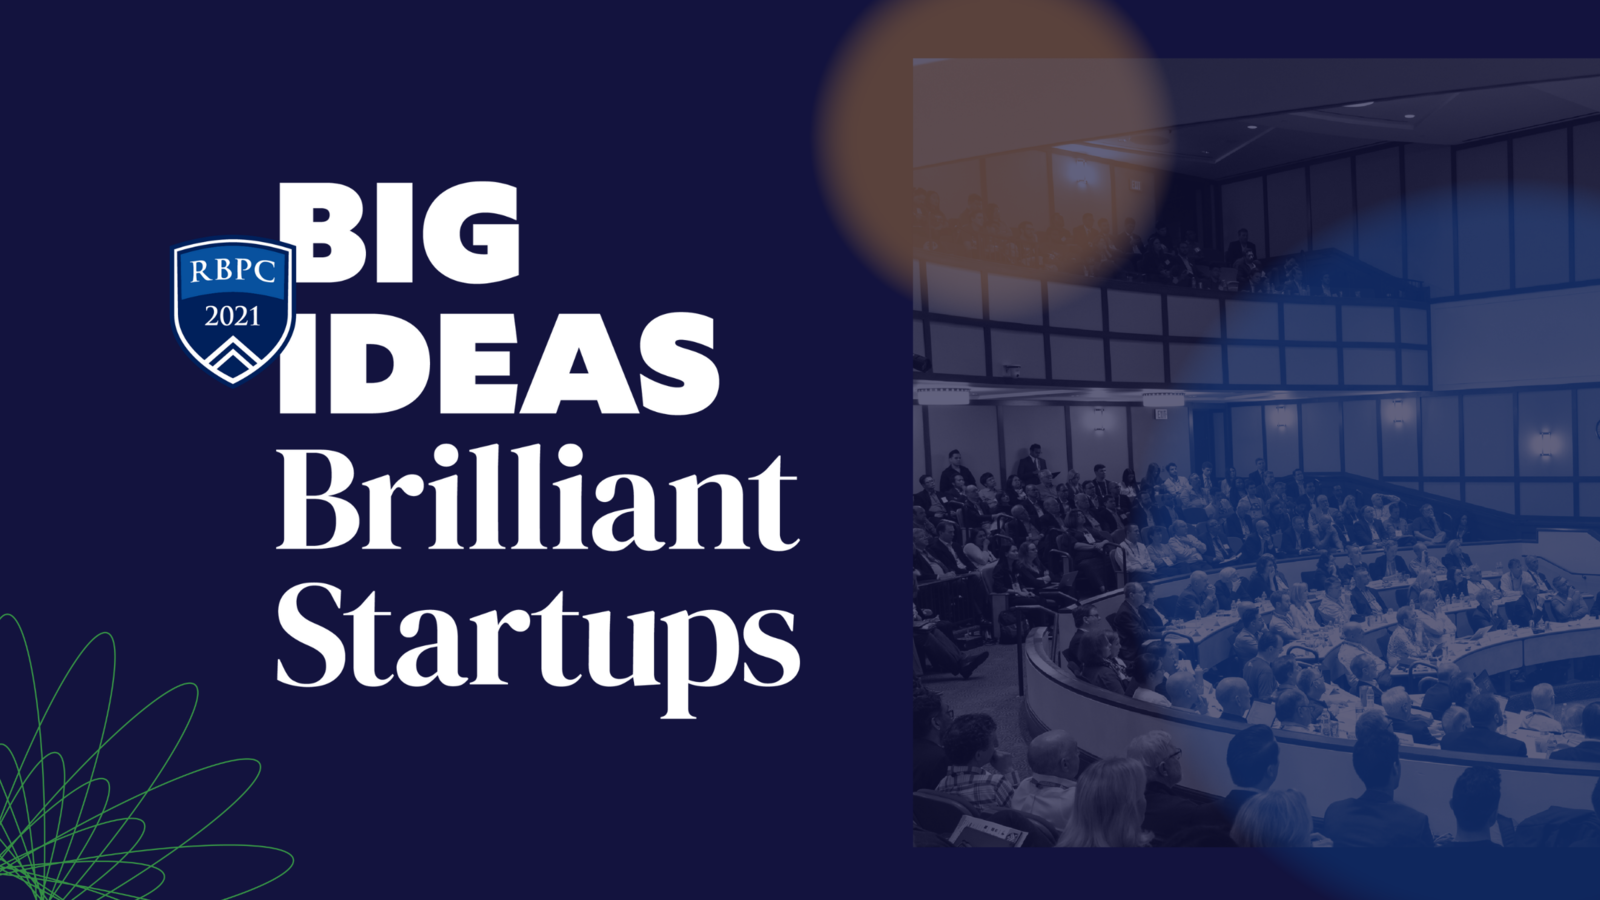 Big Ideas Brilliant Startups with photo of auditorium 